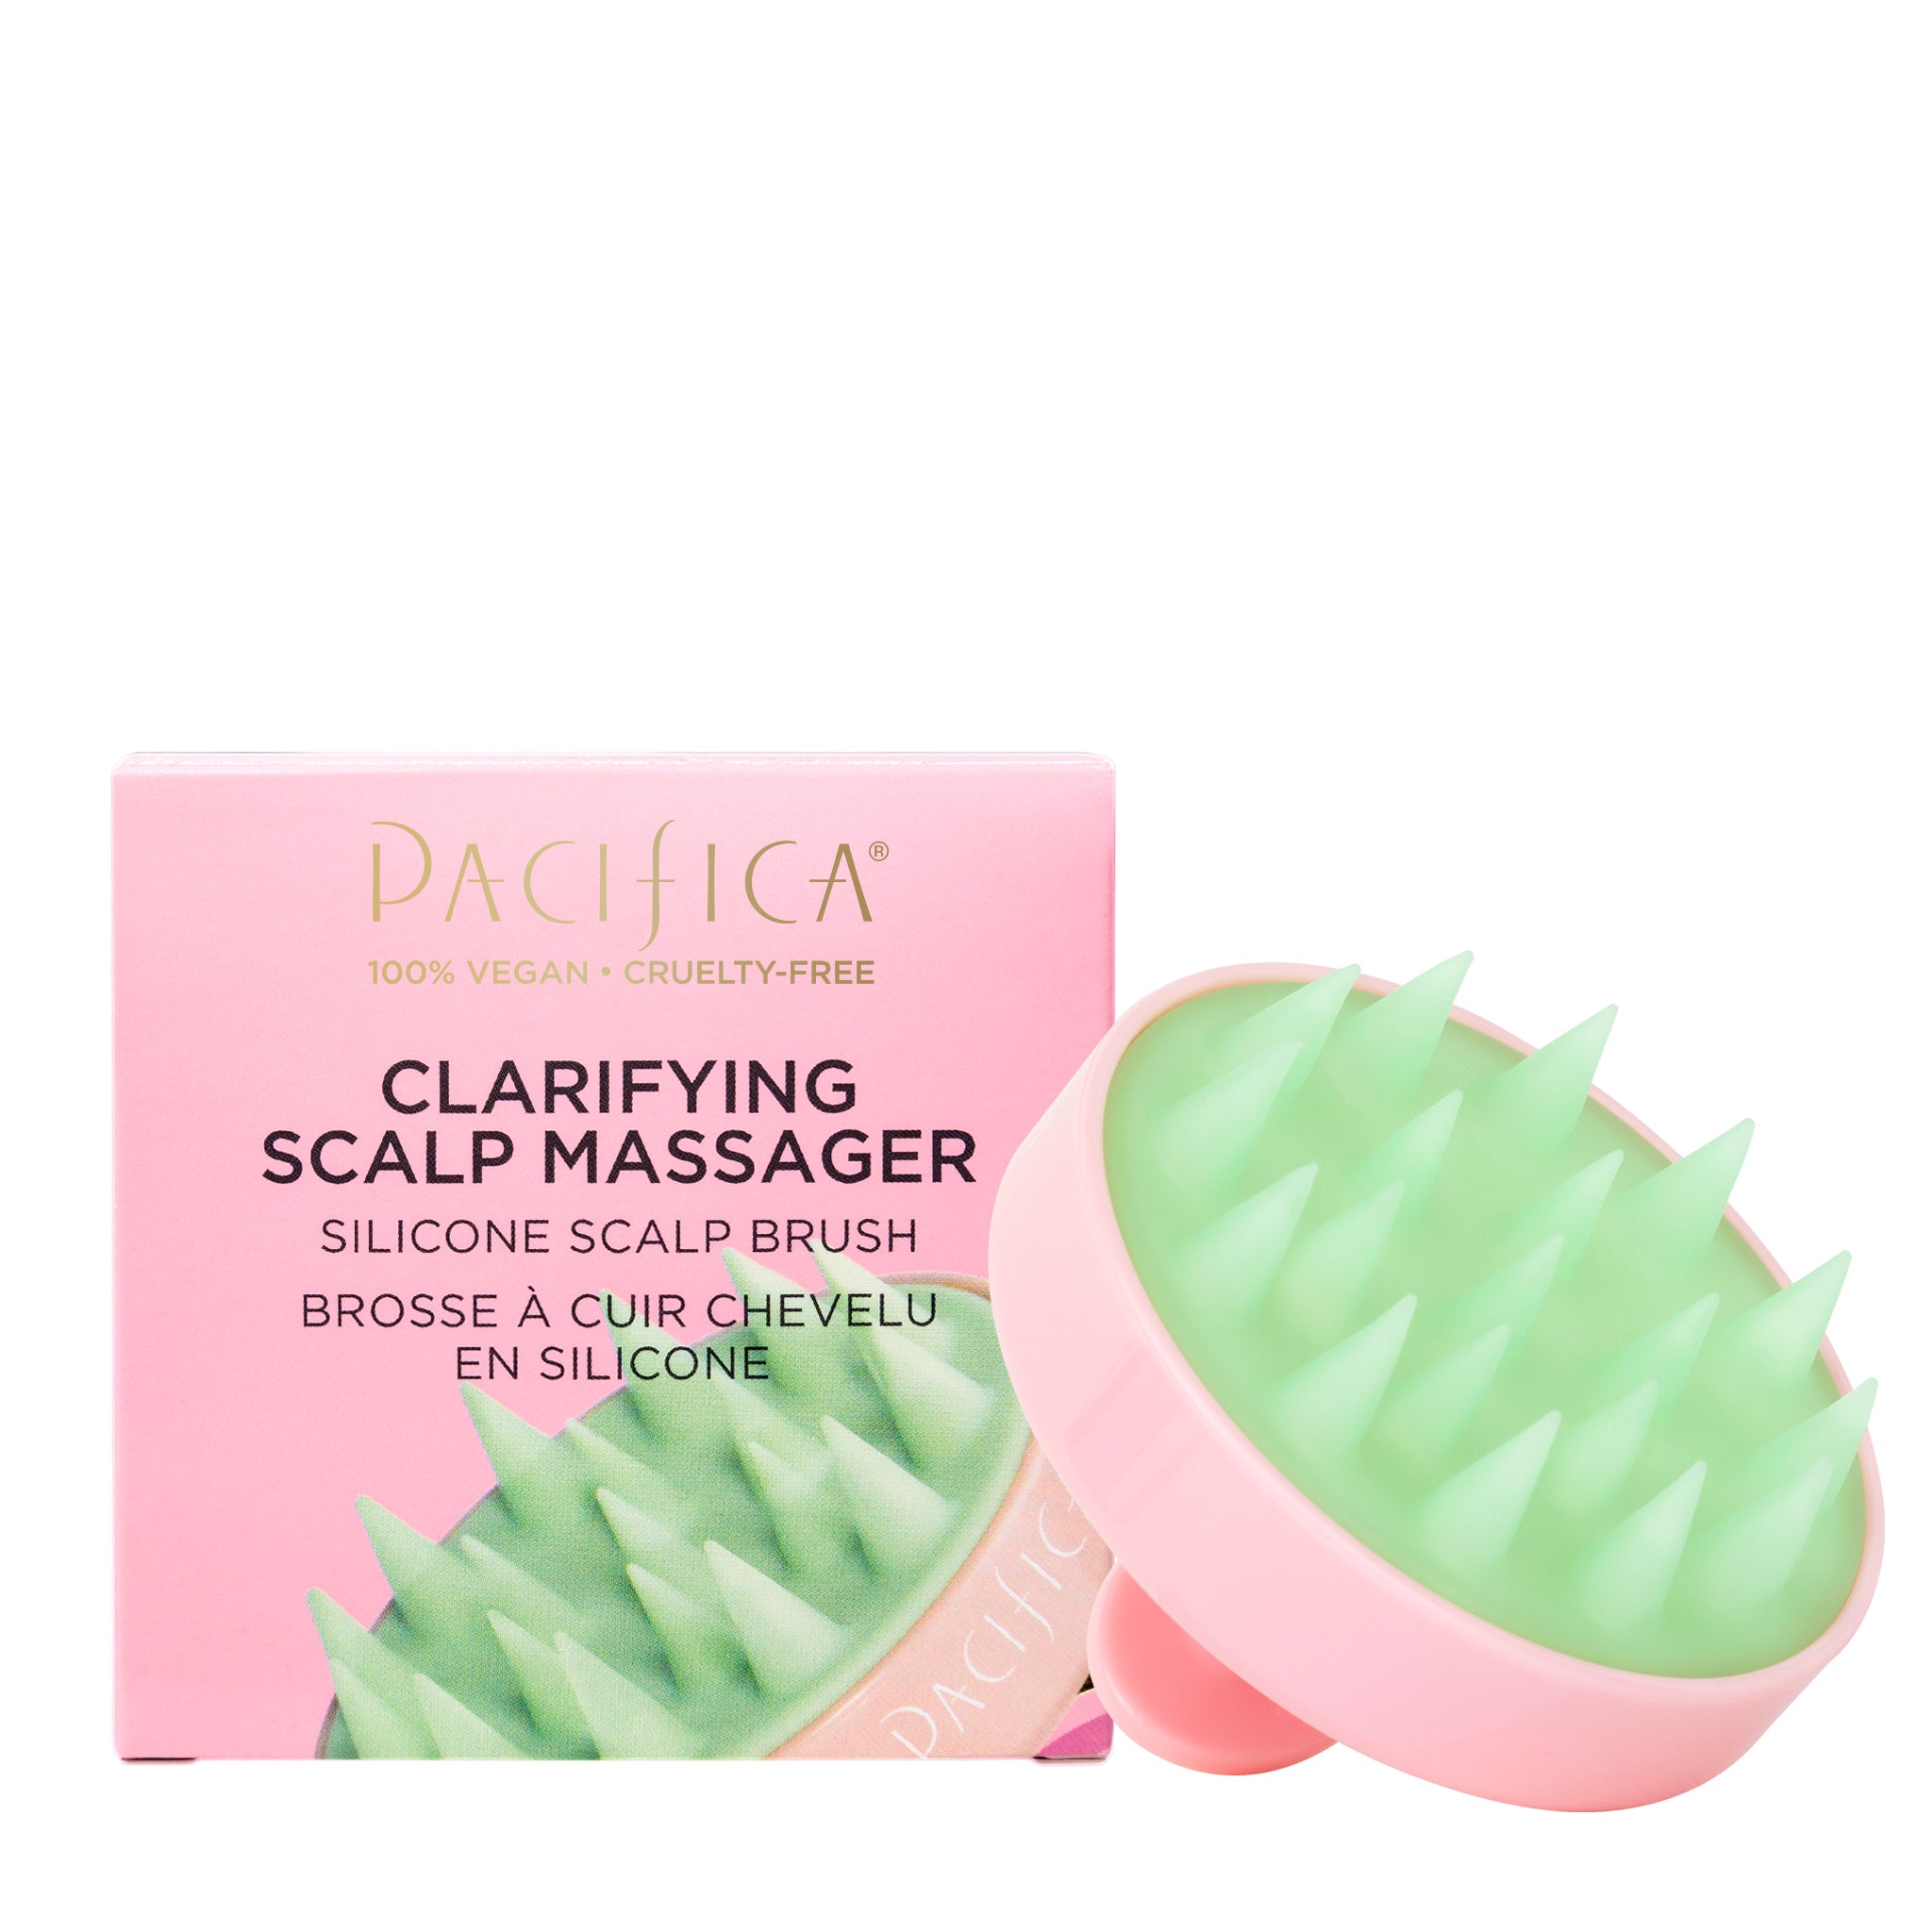 Clarifying Scalp Massager